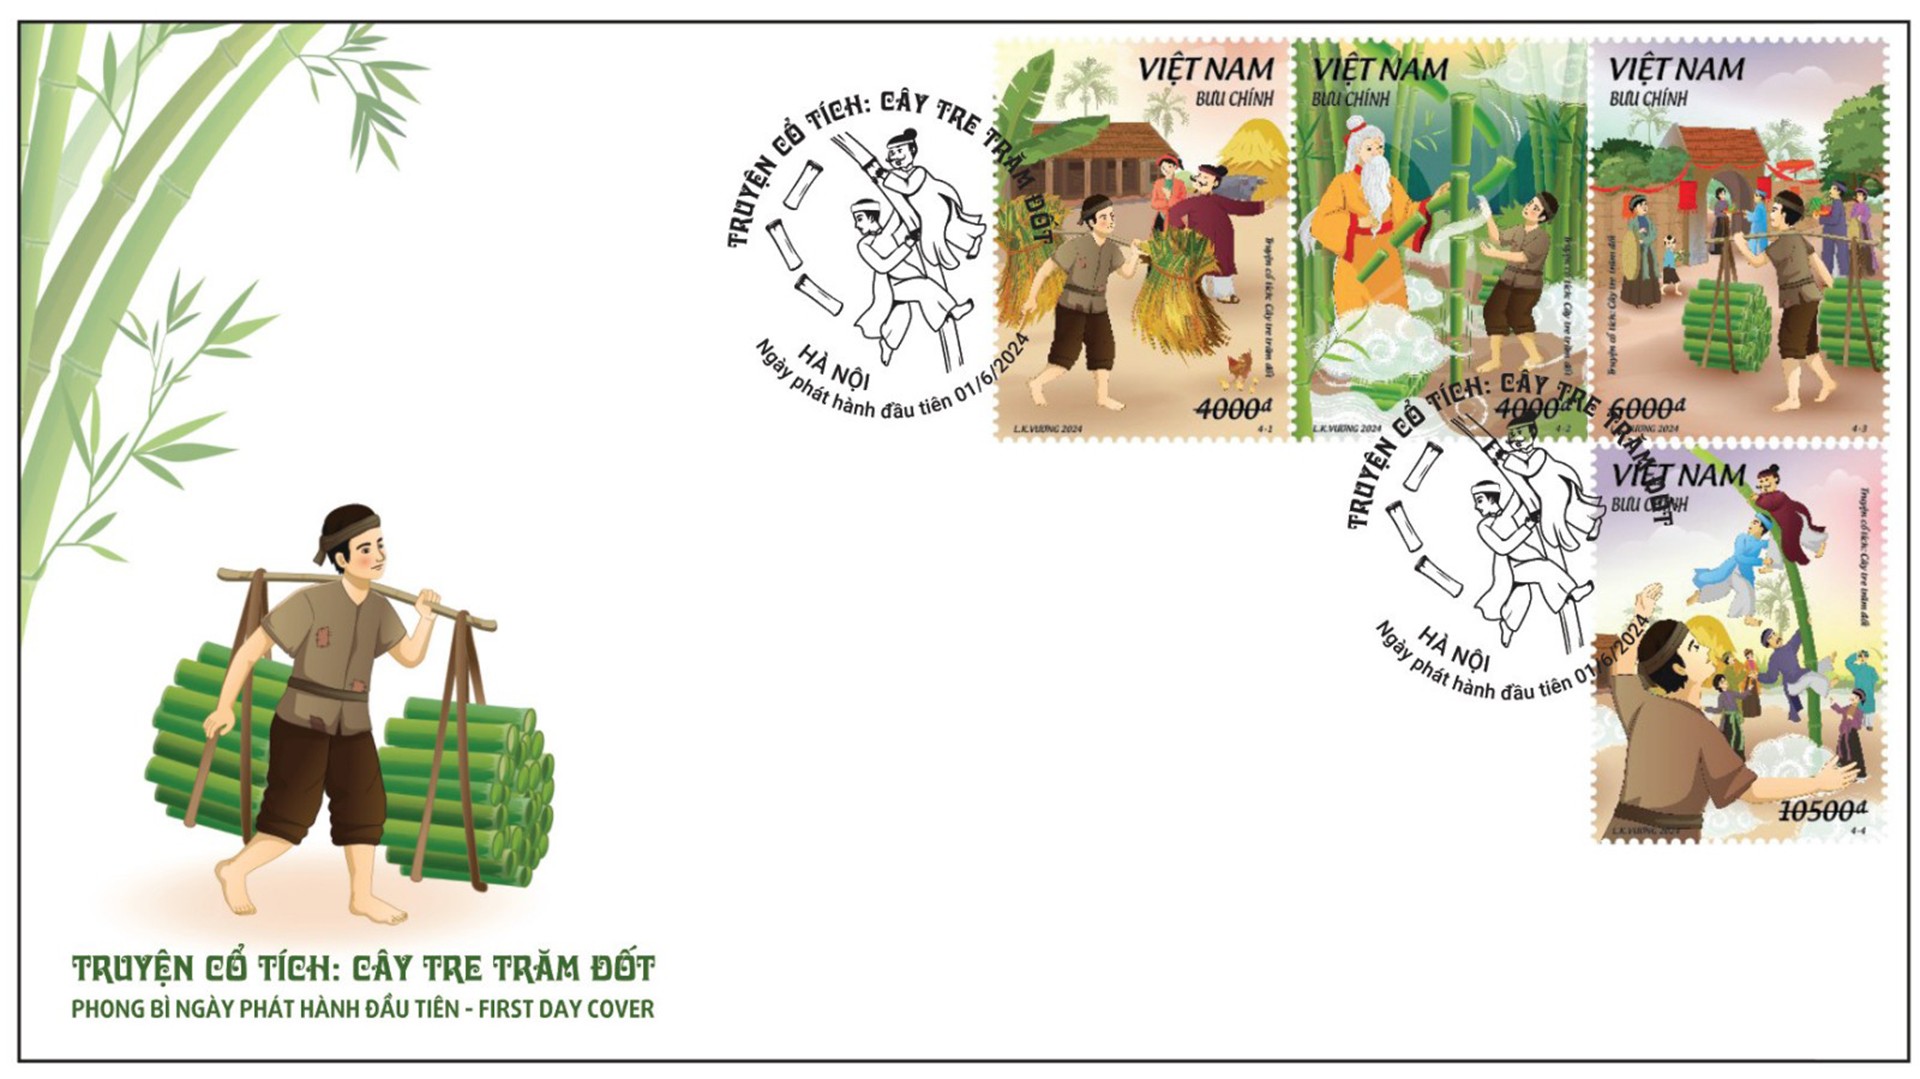 Phát hành bộ tem “Truyện cổ tích Việt Nam: Cây tre trăm đốt”